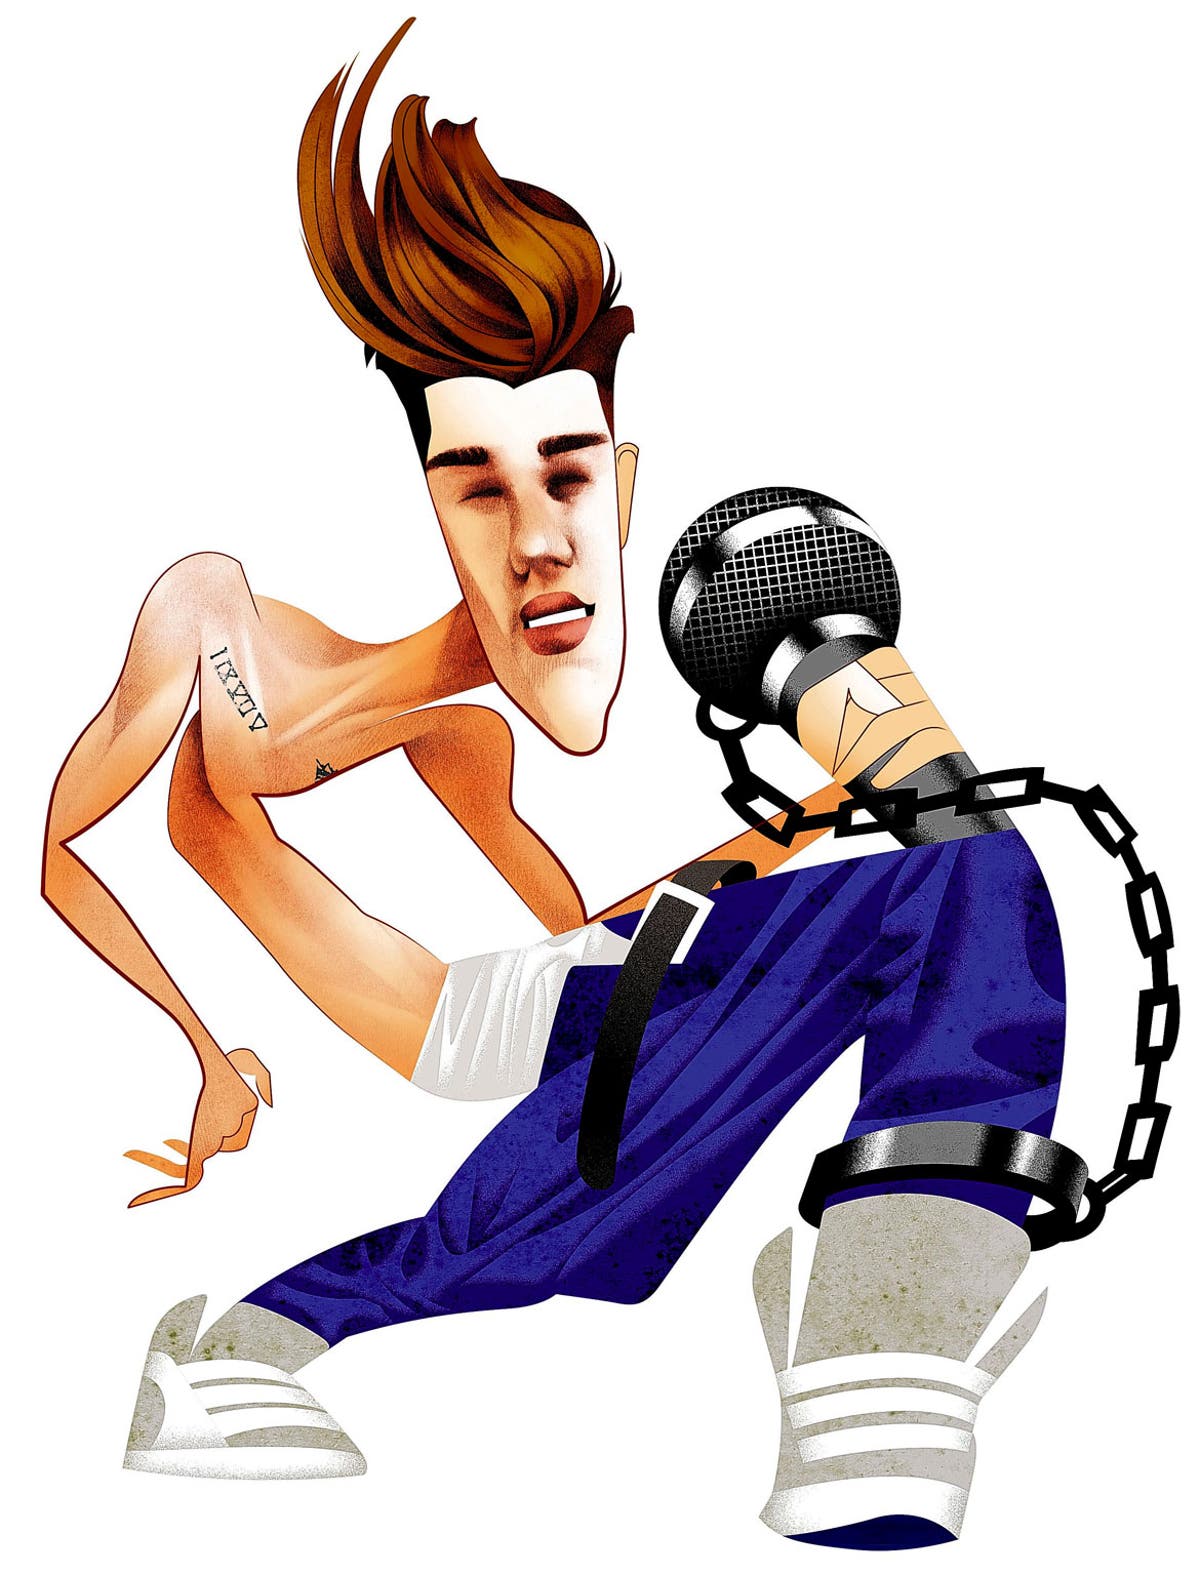 Justin Bieber caricature